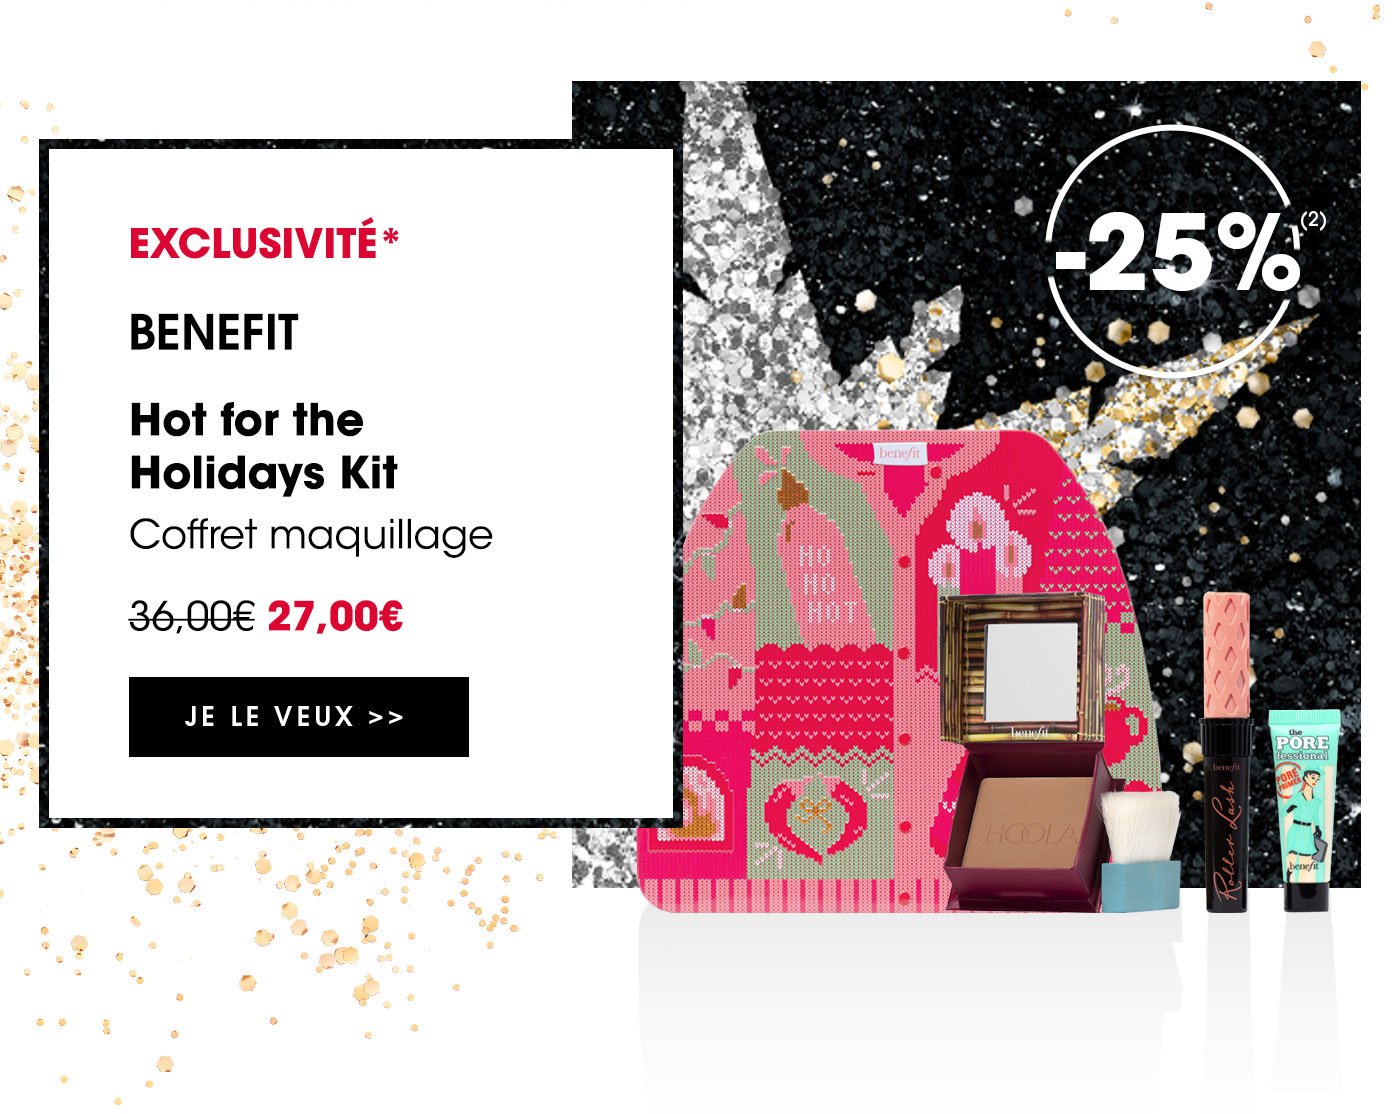 [EXCLUSIVITÉ] BENEFIT | Hot for the Holidays Kit - Coffret maquillage | JE LE VEUX >>